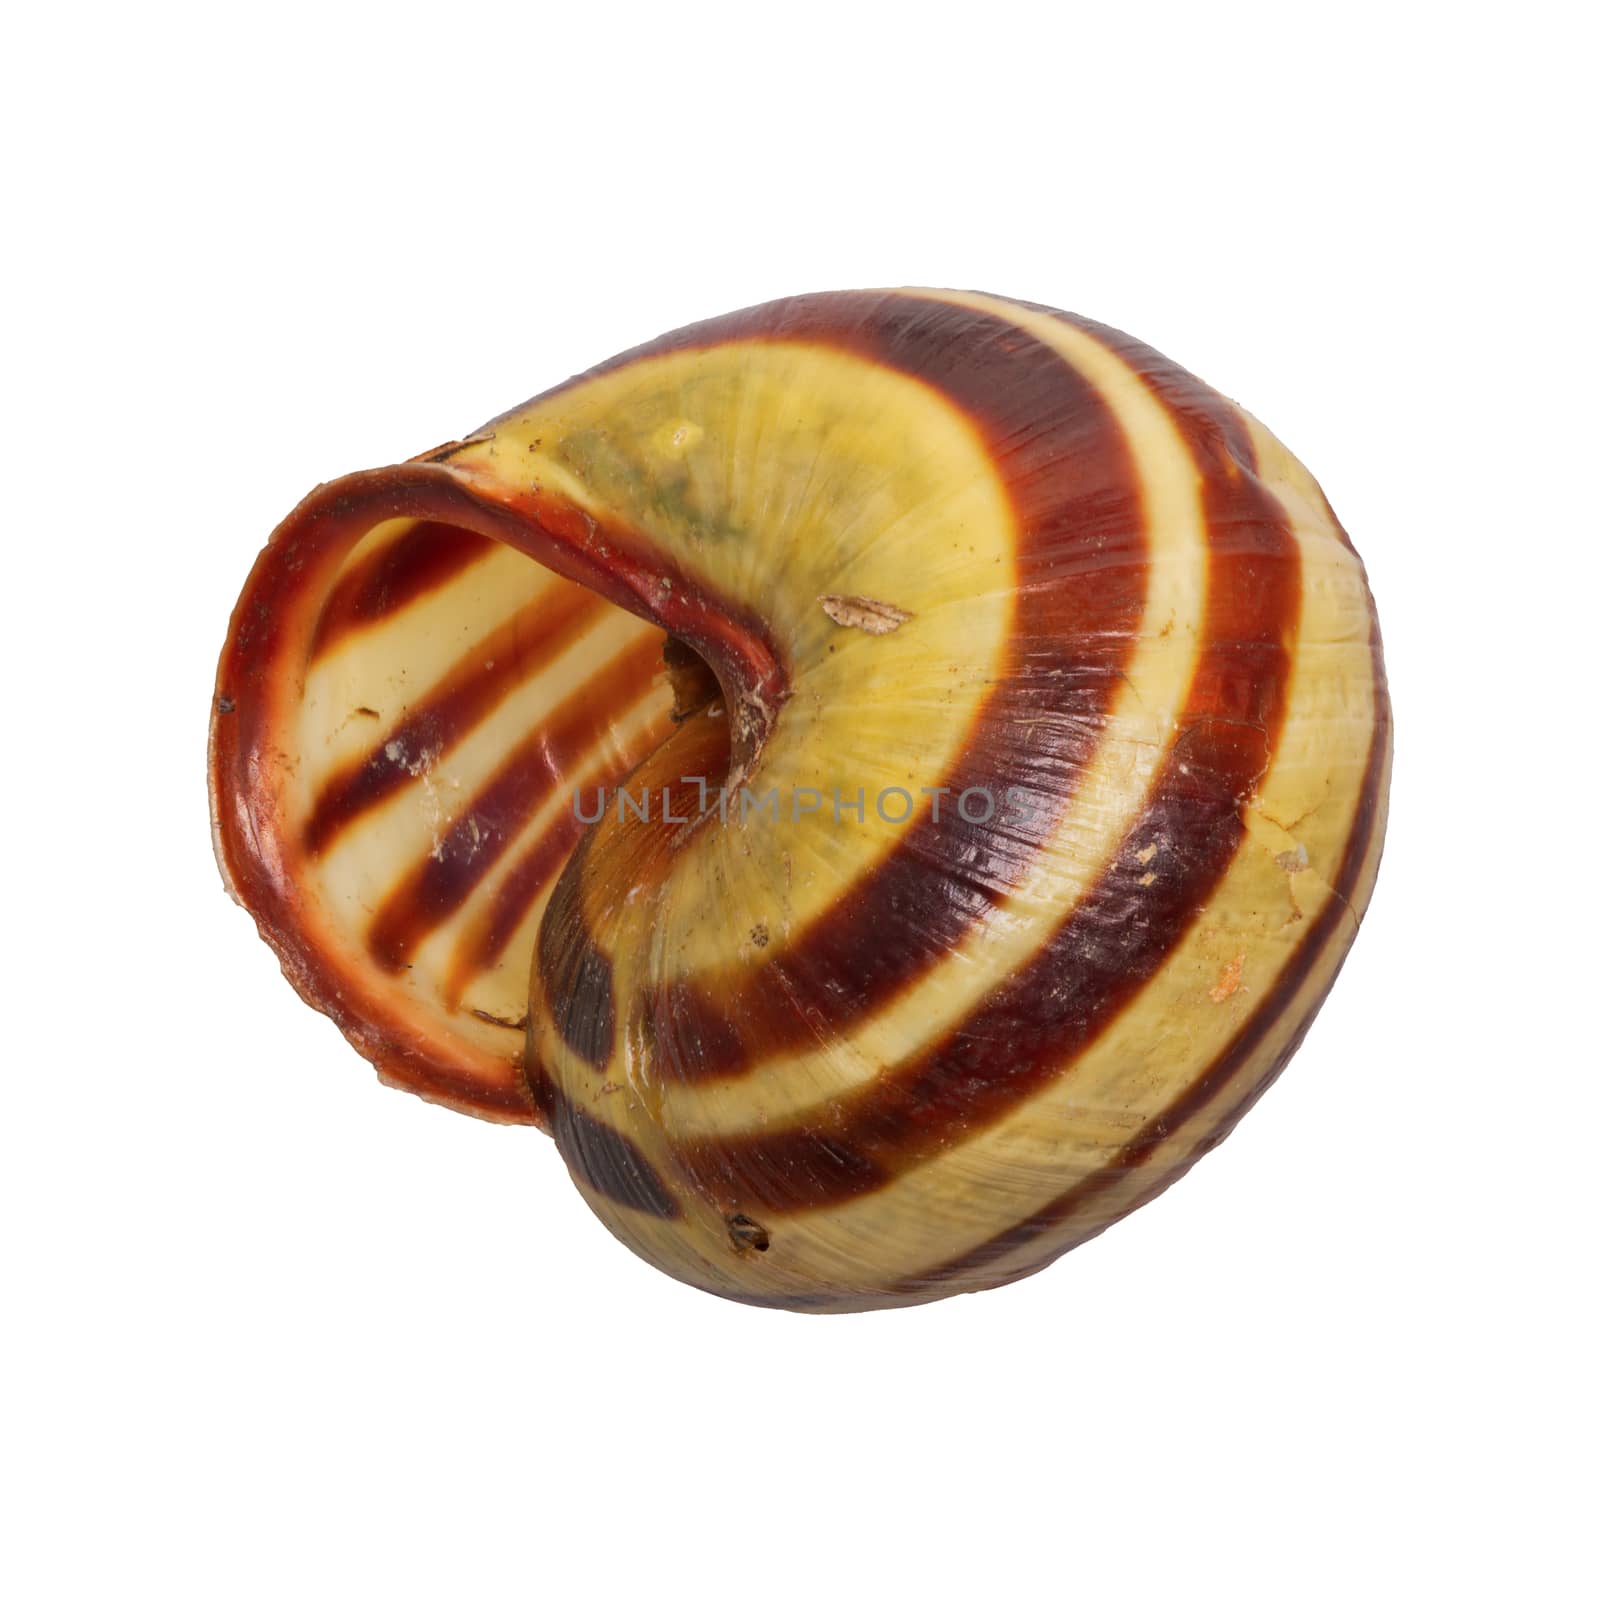 Snail shell on a white background by neryx